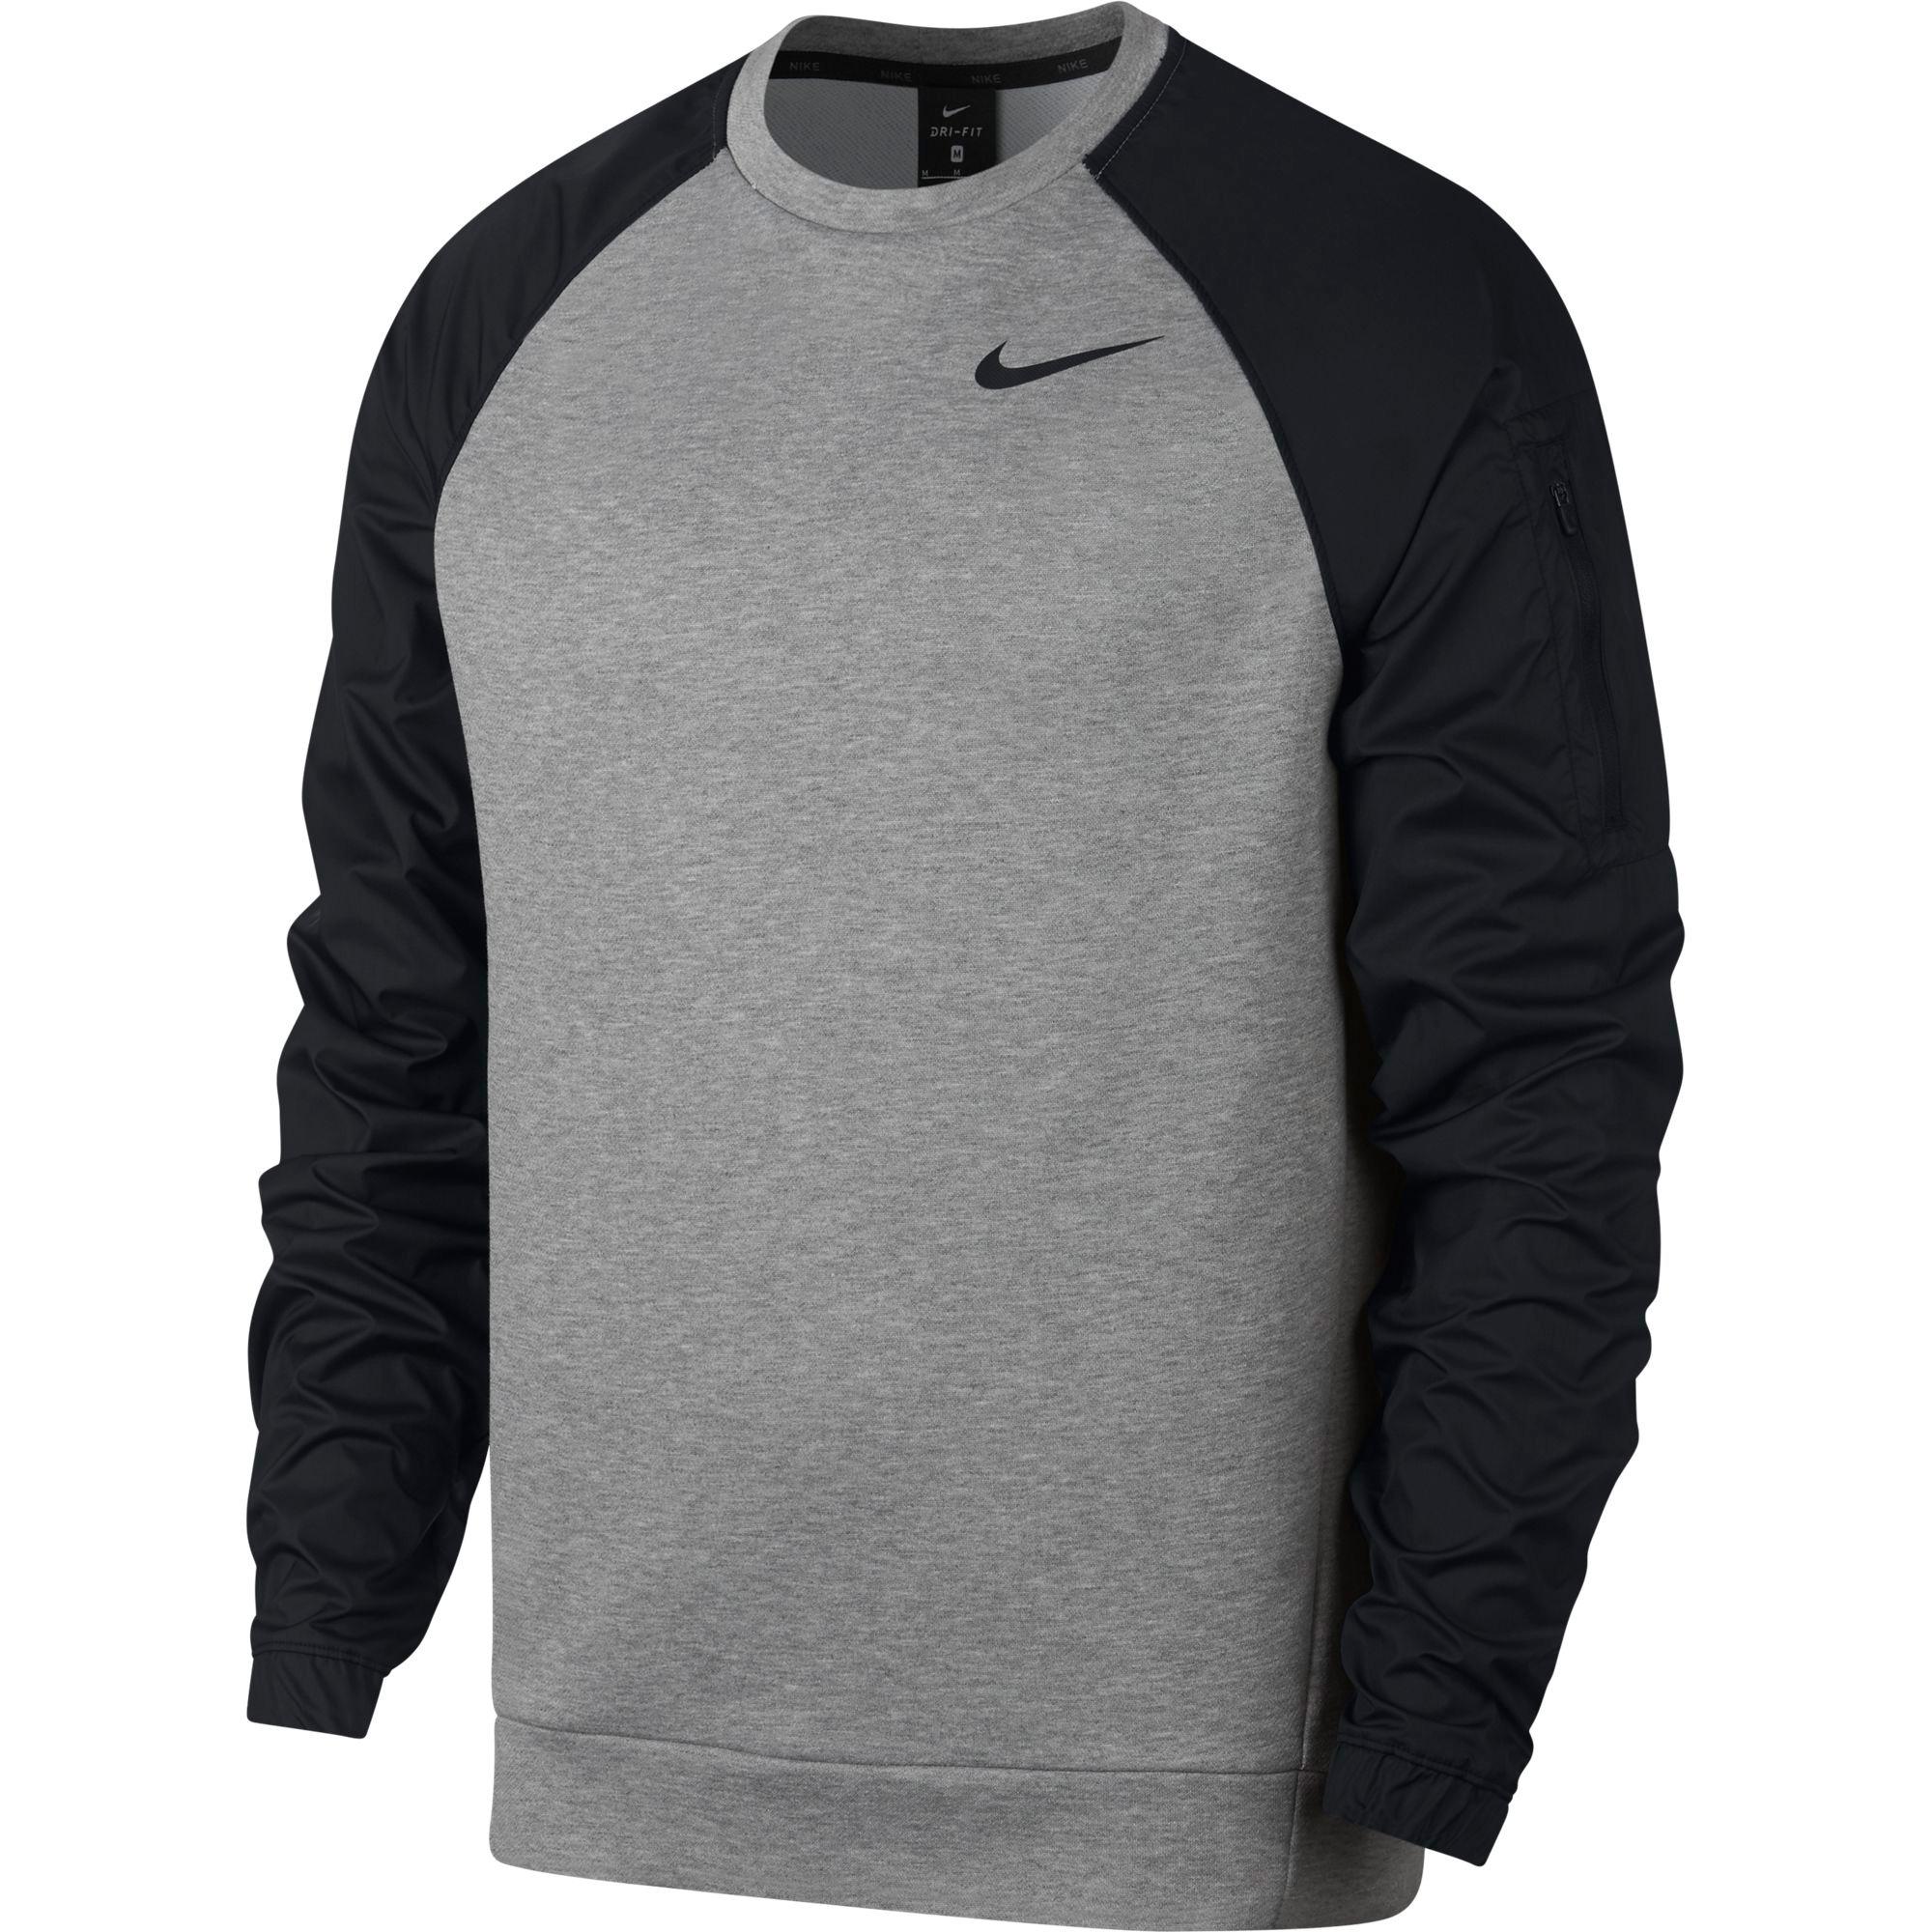 Nike Mens Dri-FIT Training Top - Dark Grey/Heather Black - Tennisnuts.com